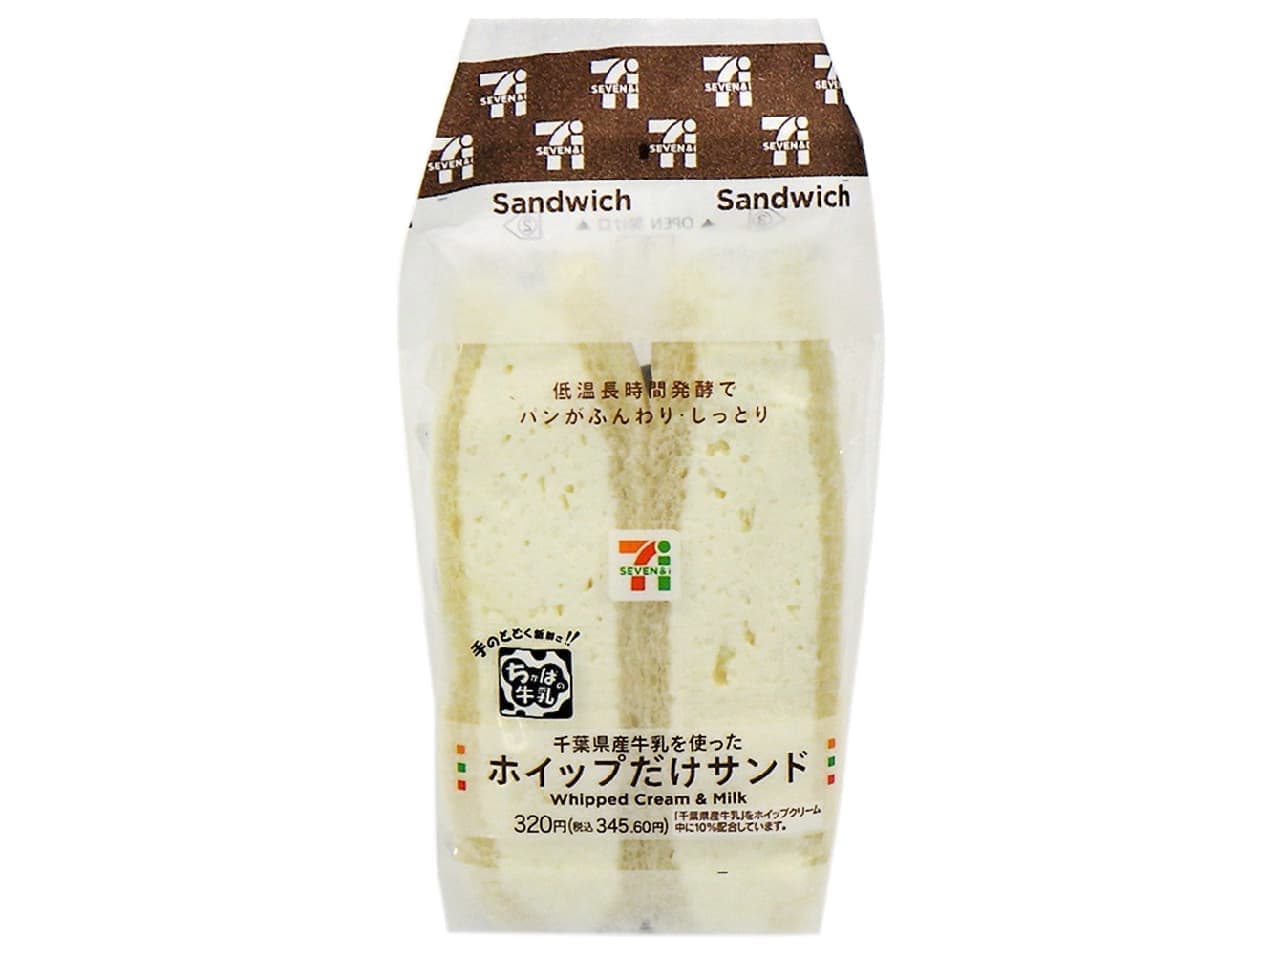 セブン-イレブン「千葉県産牛乳を使った ホイップだけサンド」